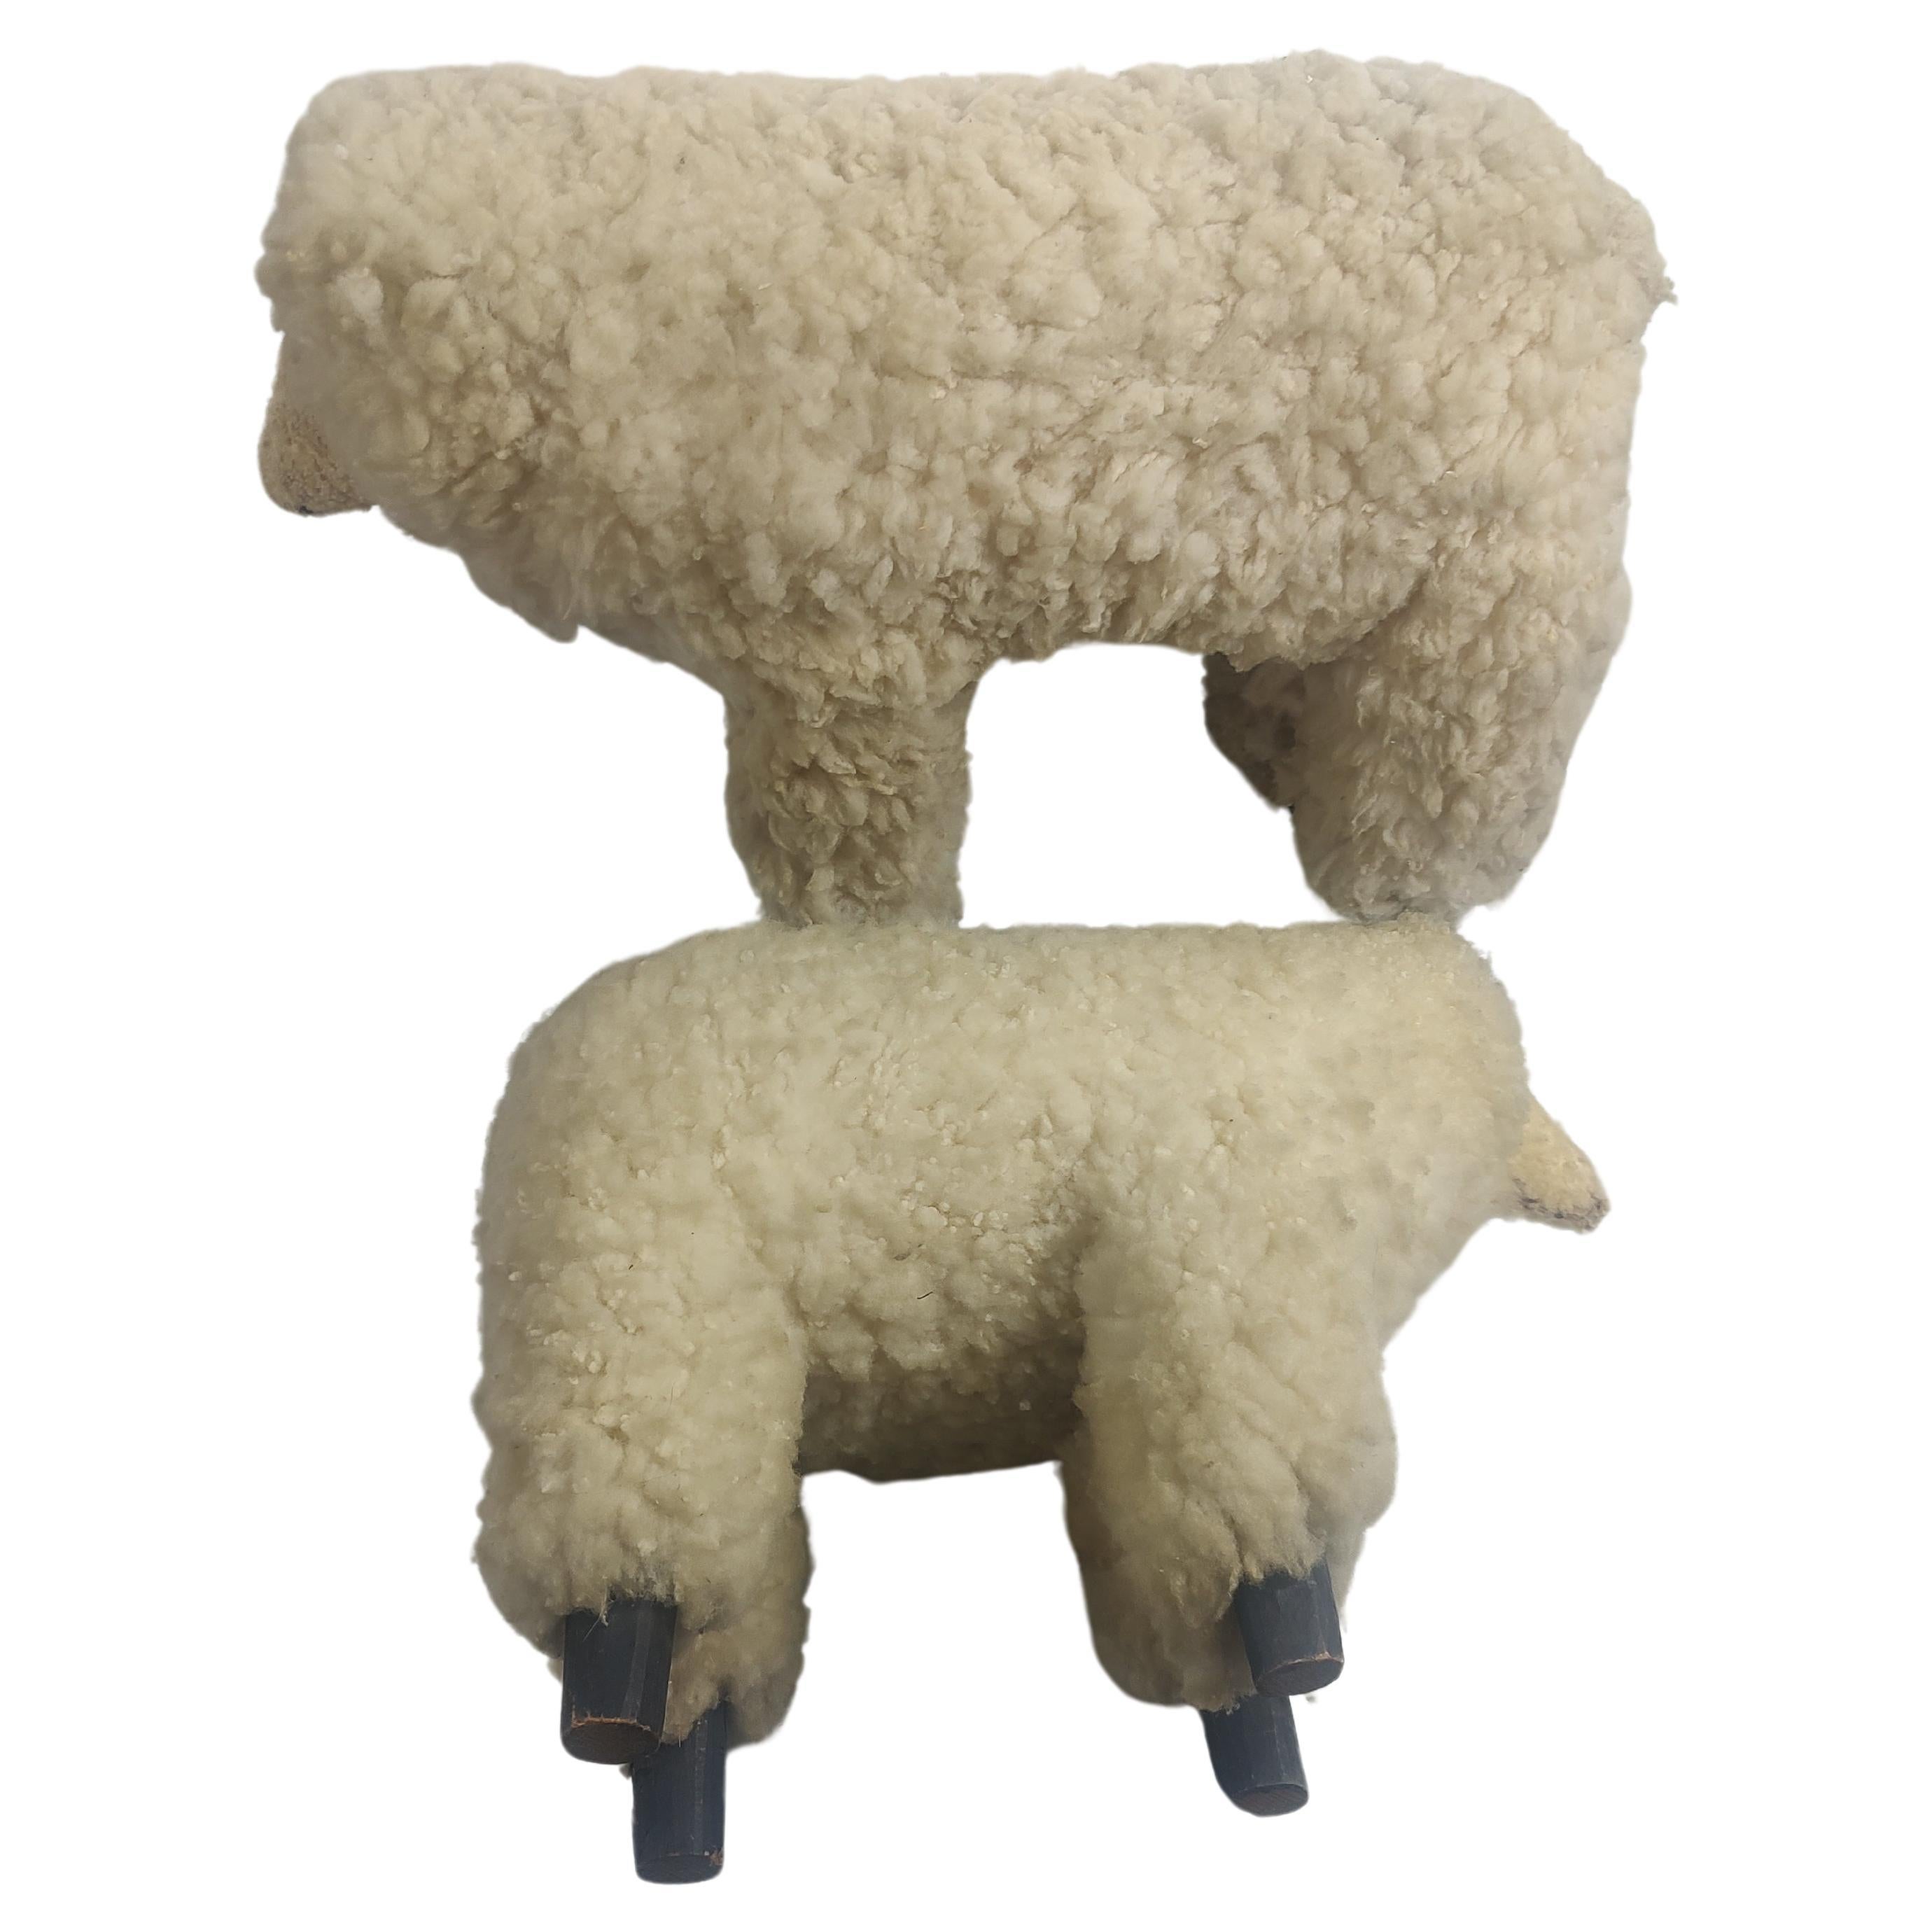 Fabelhaftes Paar Skulpturen aus dem späten 20. Jahrhundert von echten Schafen. Beide sind bis auf die hölzernen Hufe mit Wolle bedeckt. In ausgezeichnetem Vintage-Zustand mit minimalen Gebrauchsspuren. Preis und Verkauf als Paar. Kleineres Schaf ist